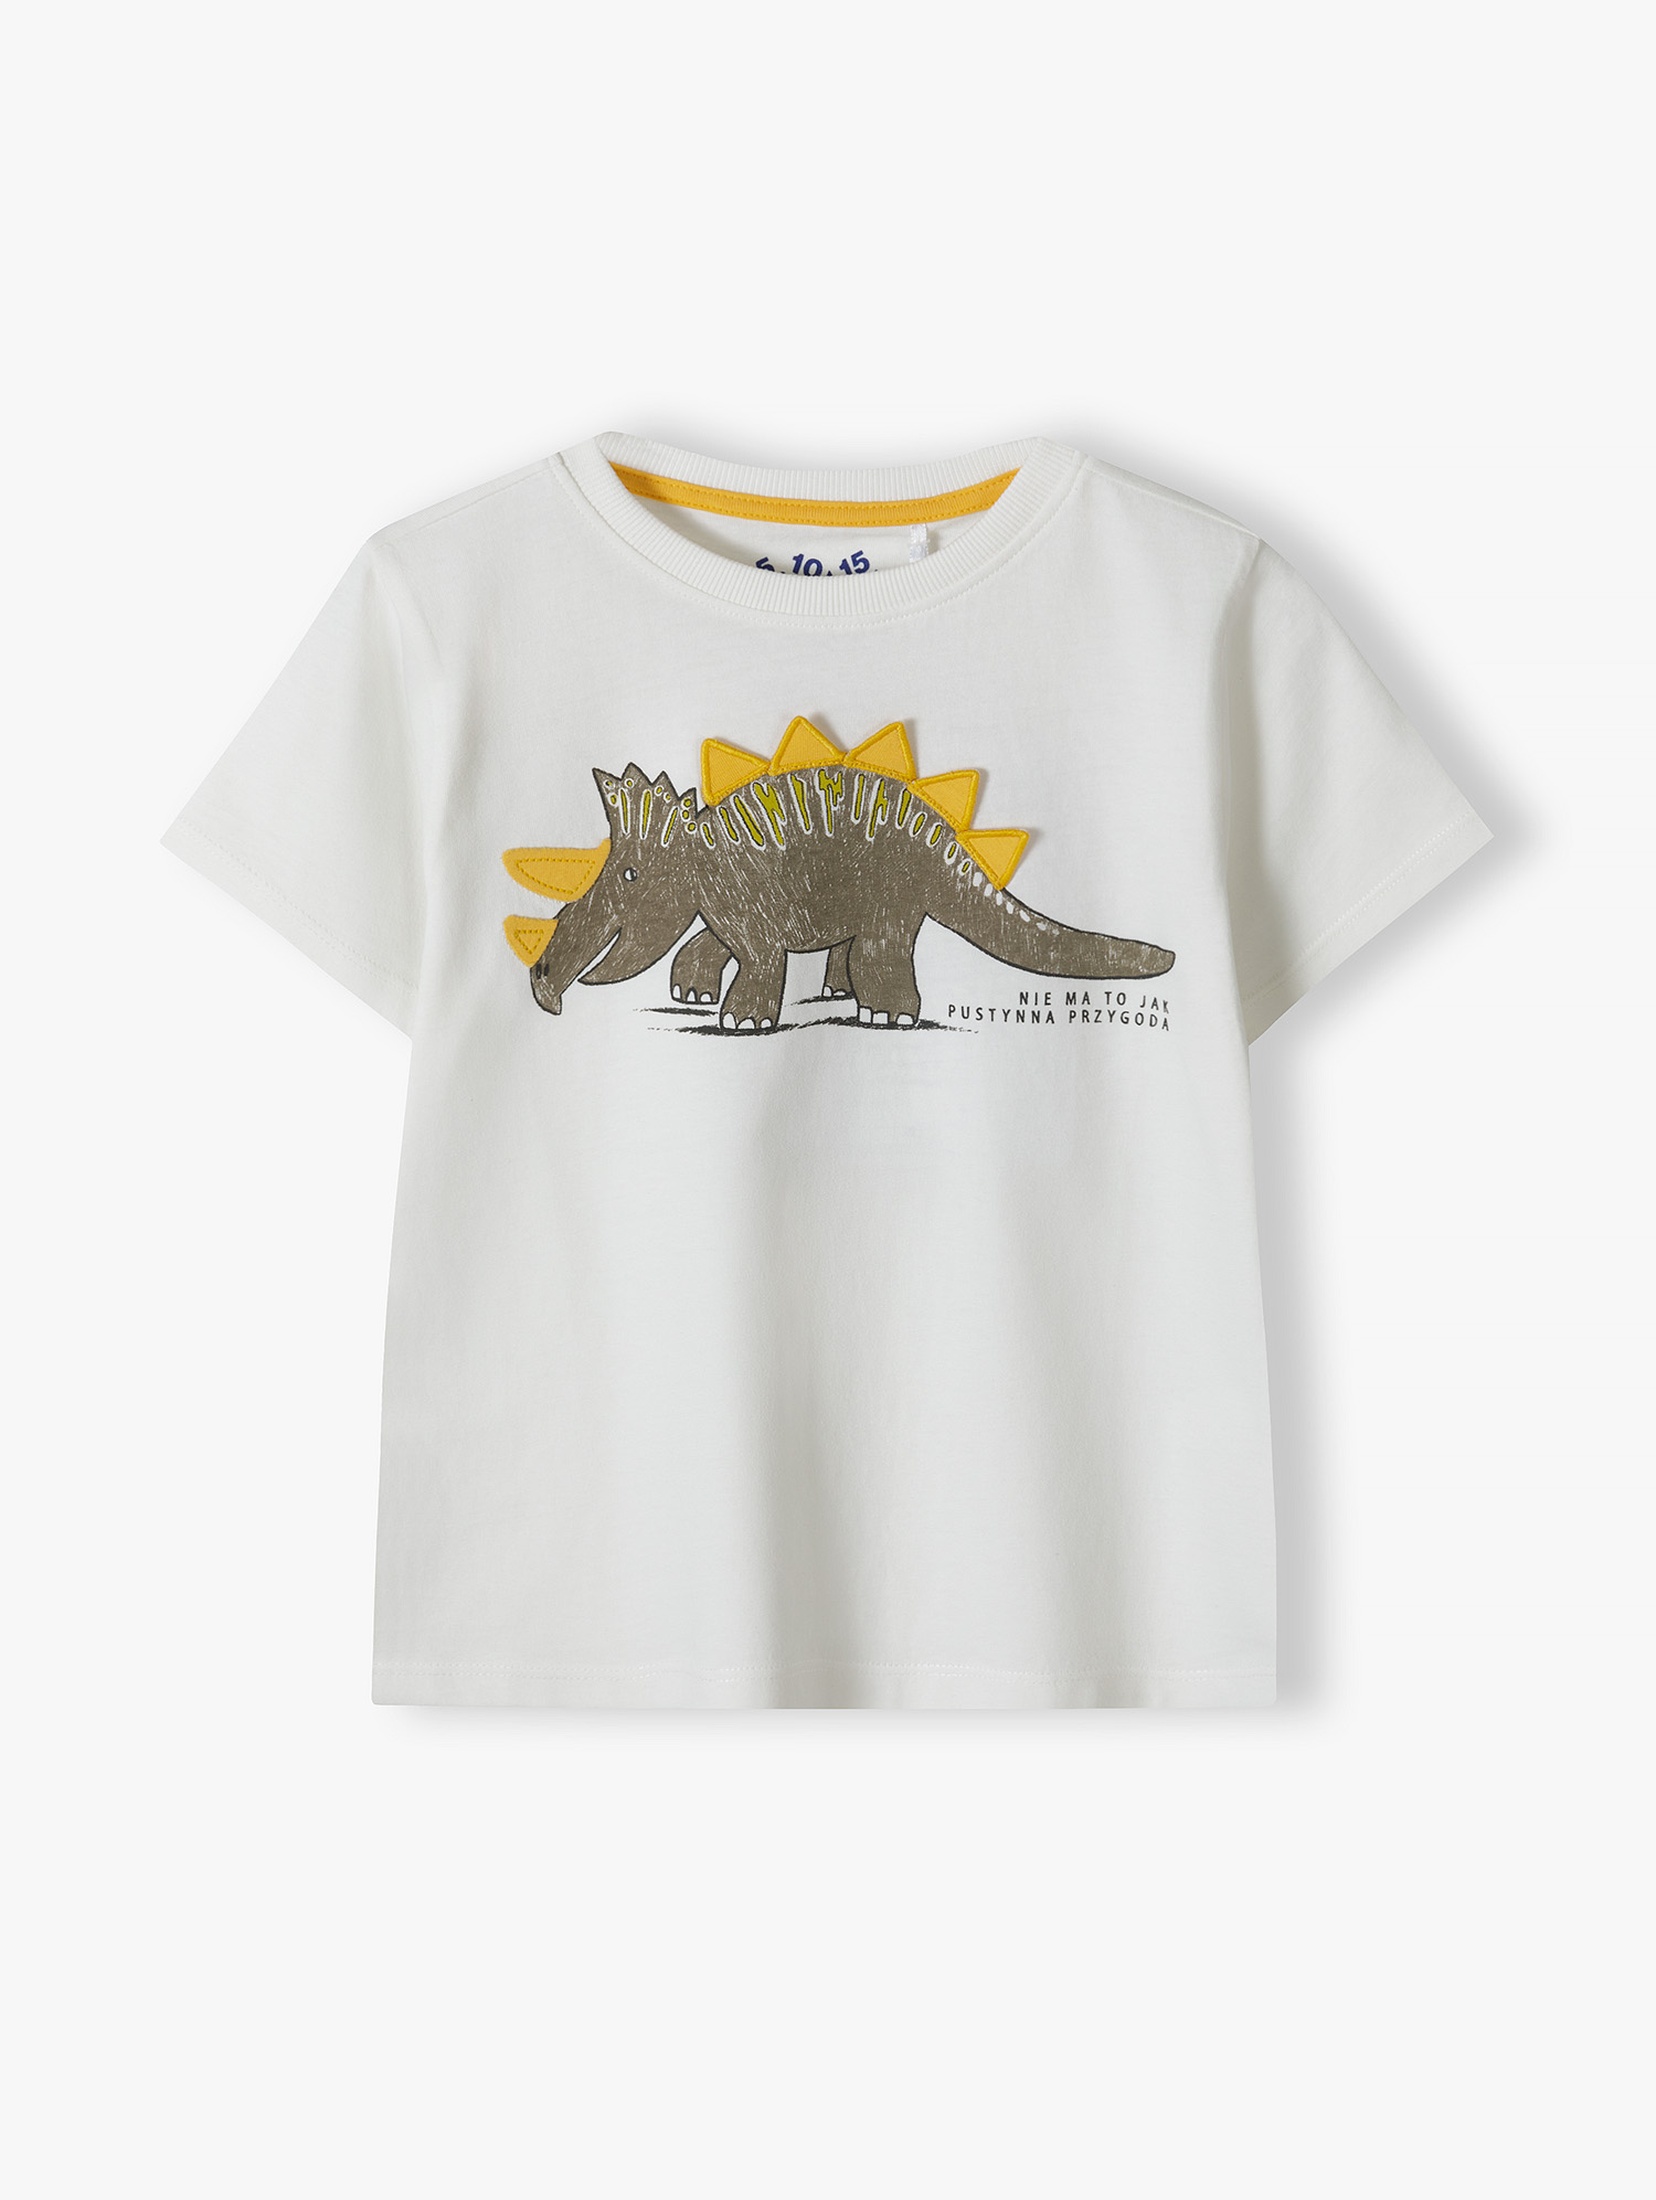 Biały t-shirt dla chłopca bawełniany z nadrukiem dinozaura